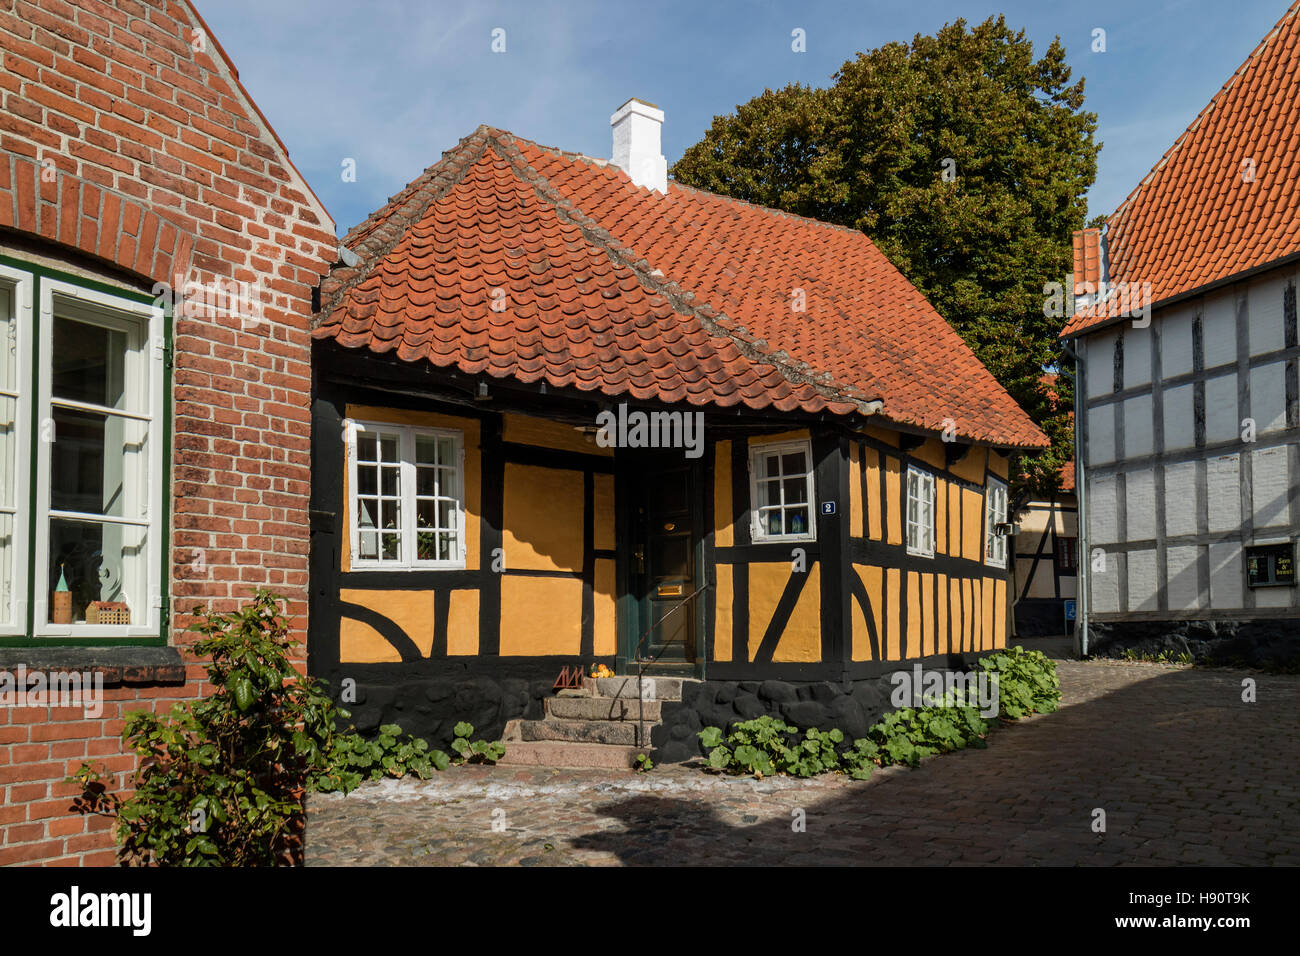 Maison traditionnelle construite dans la ville de Middelfart, Danemark Banque D'Images